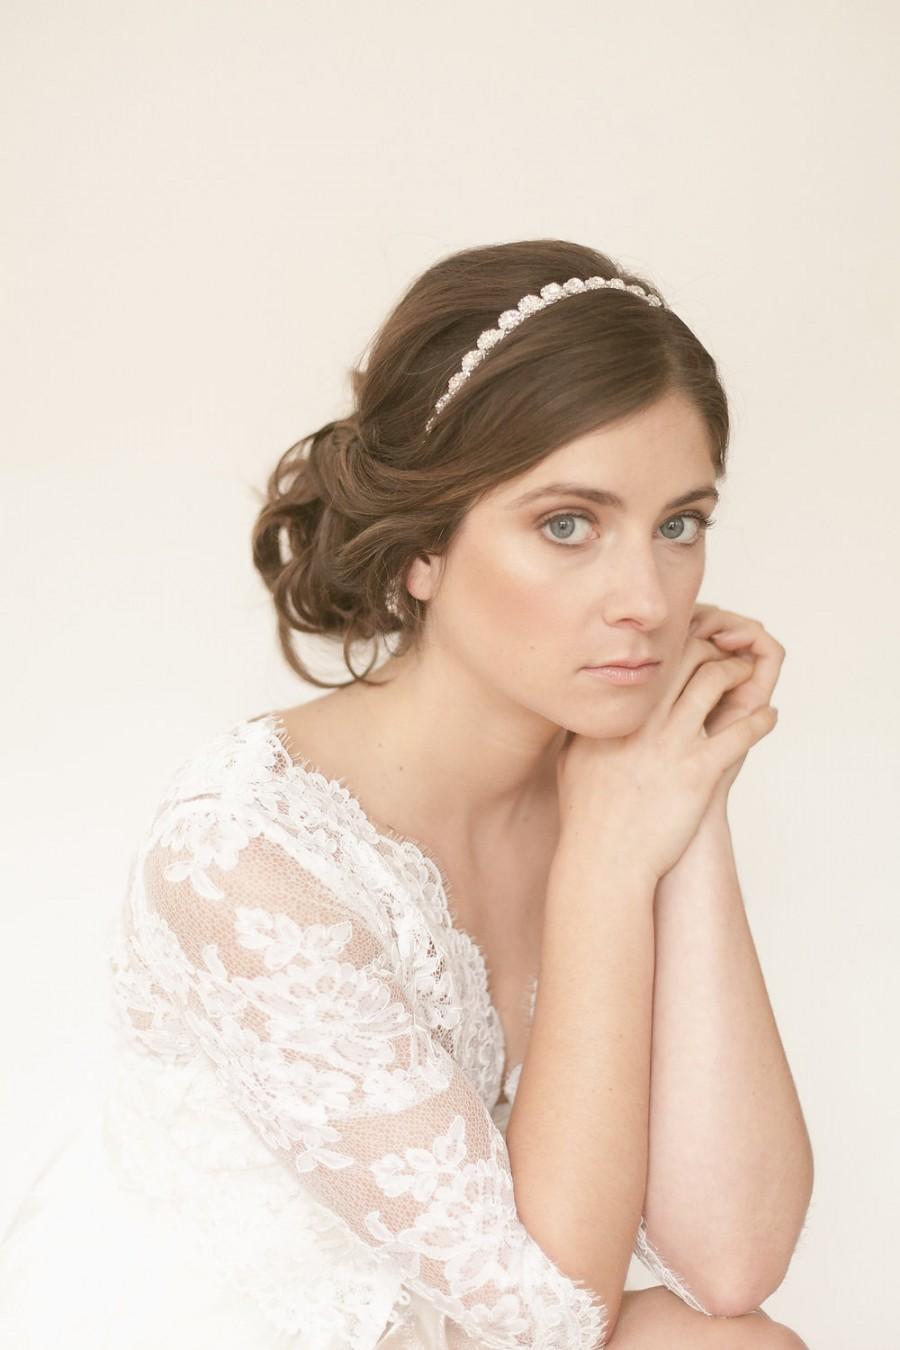 زفاف - White Diamond - G. Rhinestone filled crystal diamond sparkling dazzling gem stone halo headband sash wedding bridal headpiece comb hair